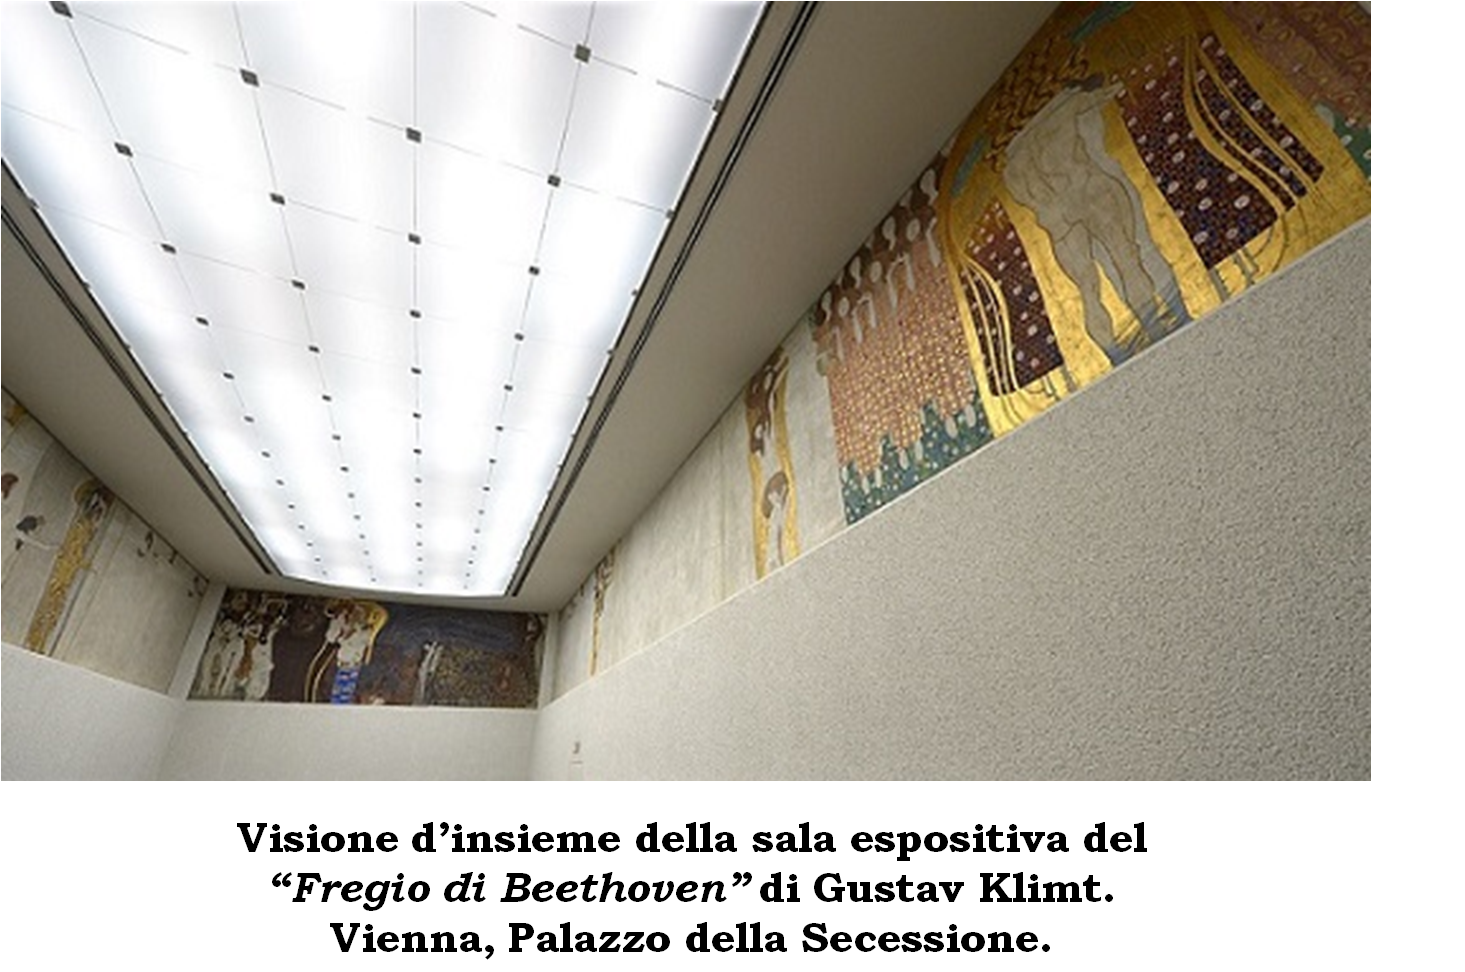 Gustav Klimt, Danae e Il bacio: analisi e spiegazione